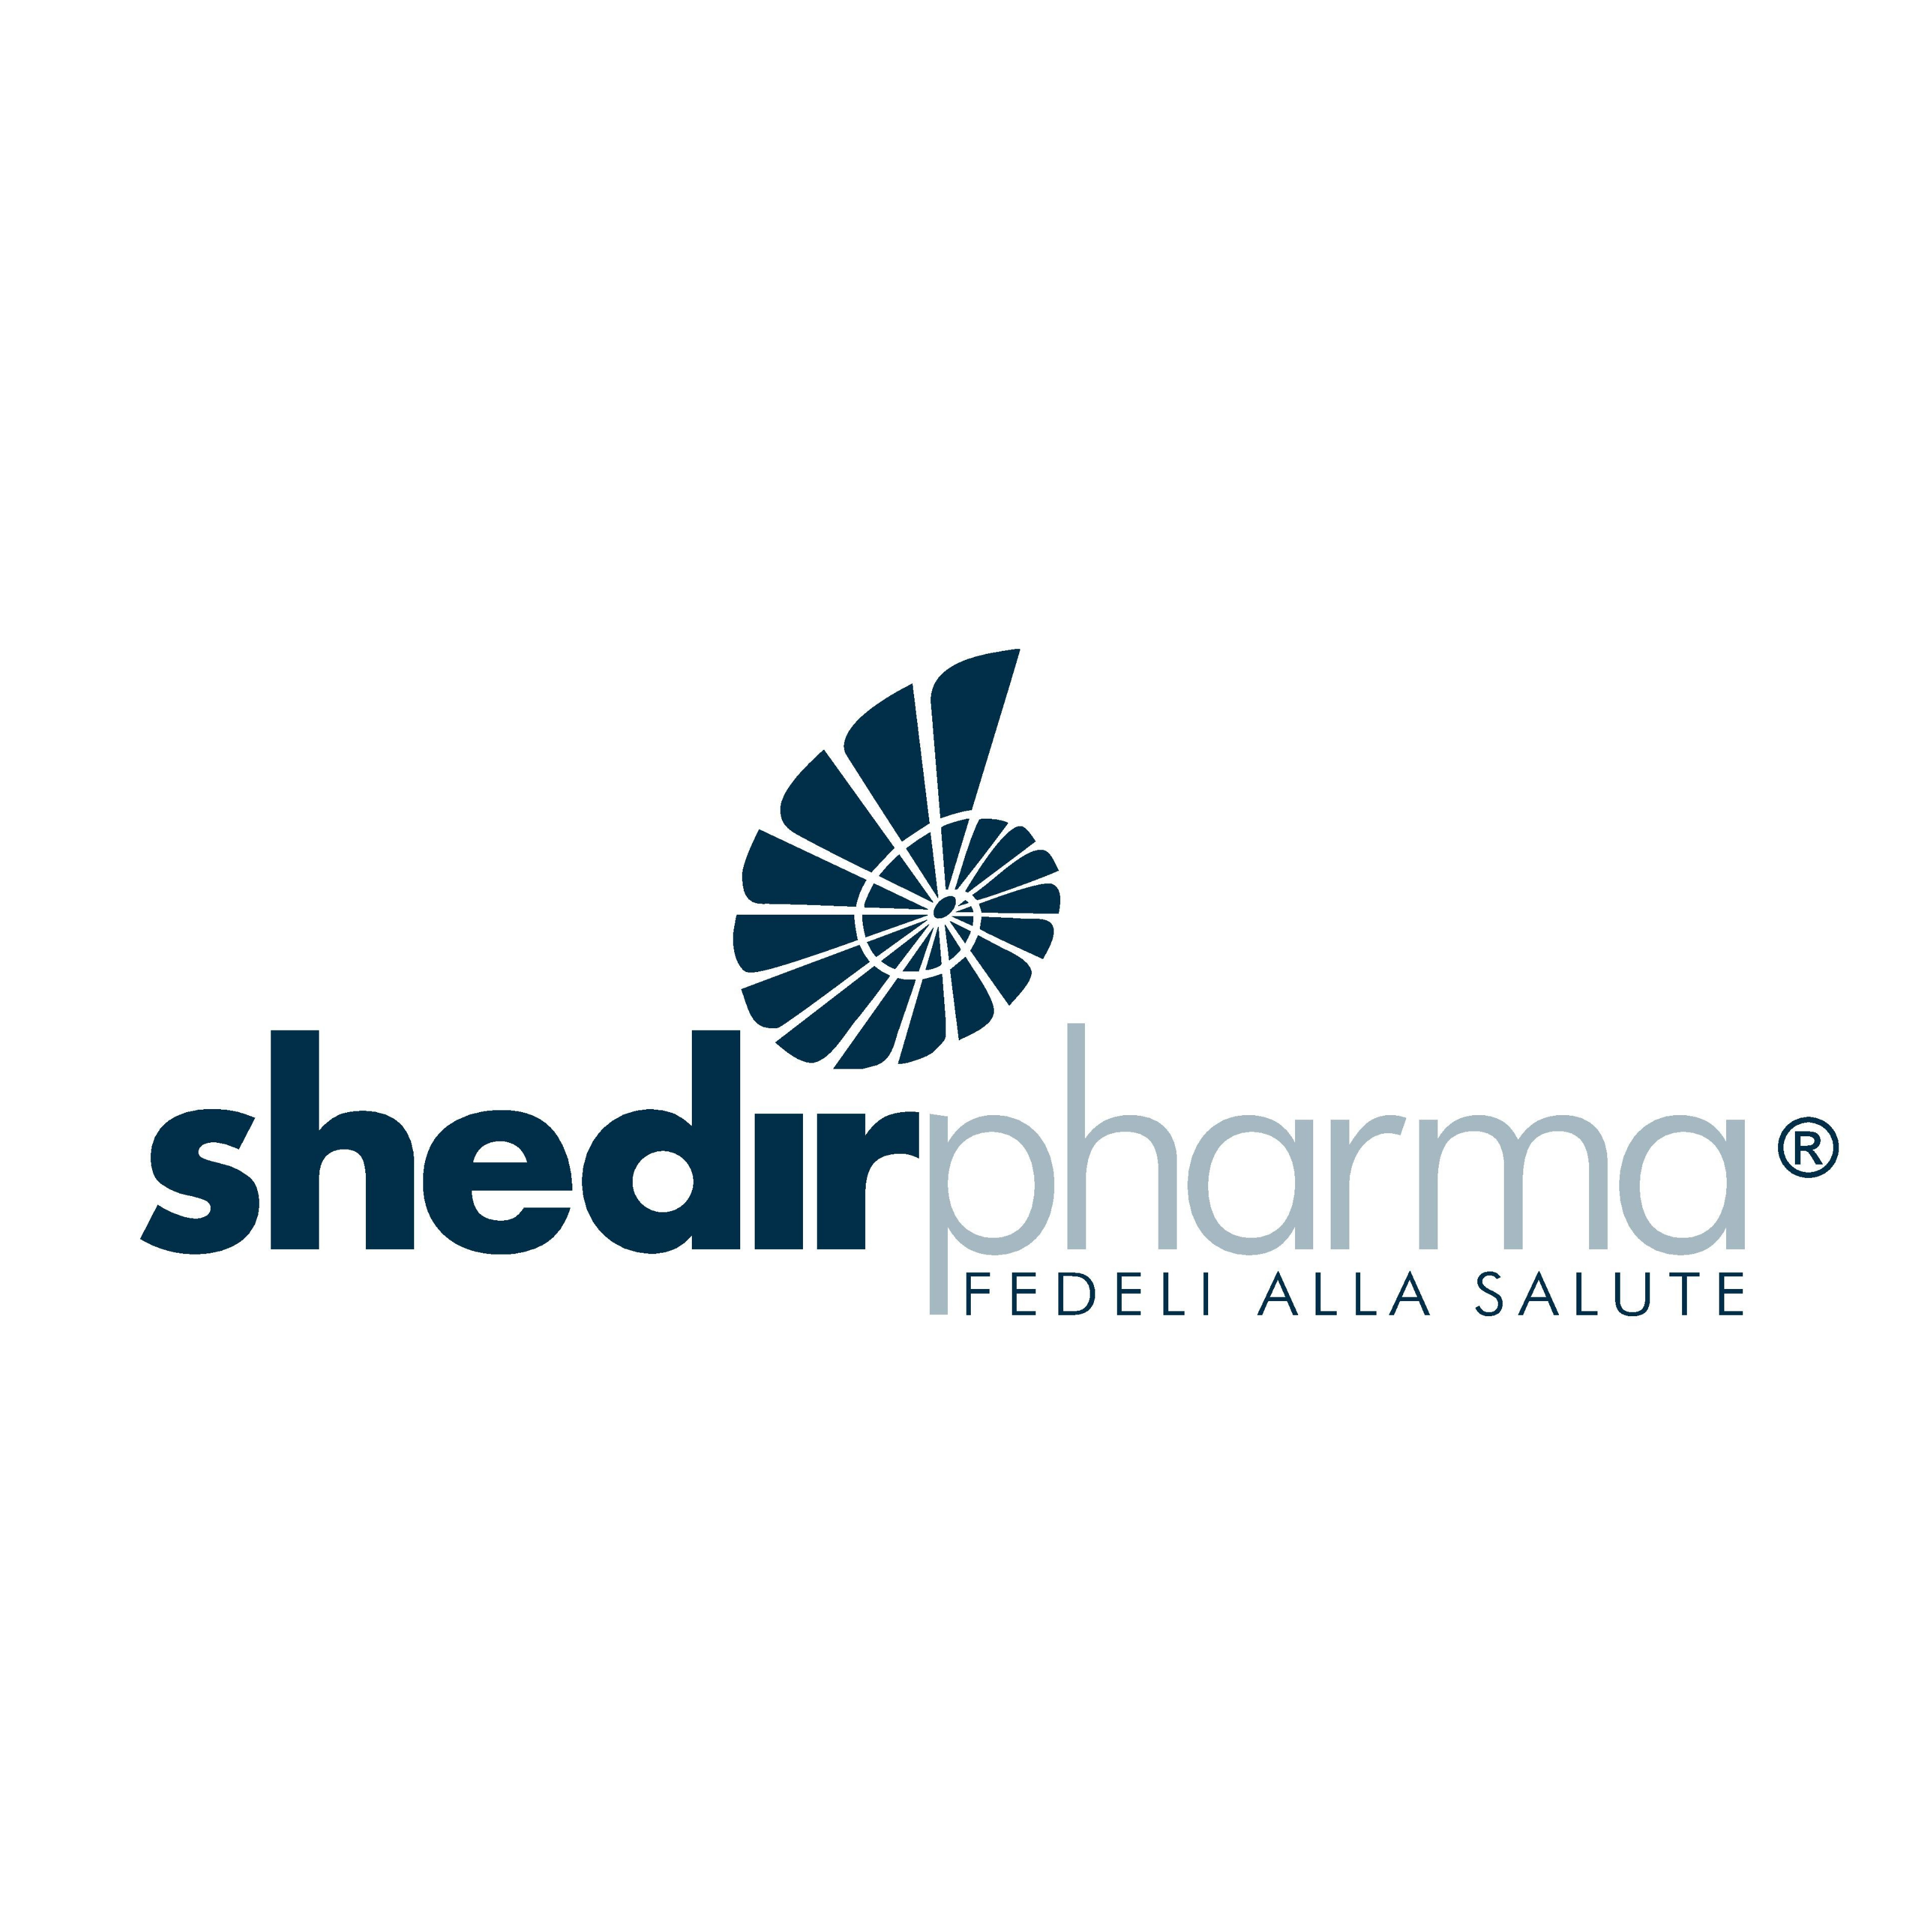 Shedir Pharma